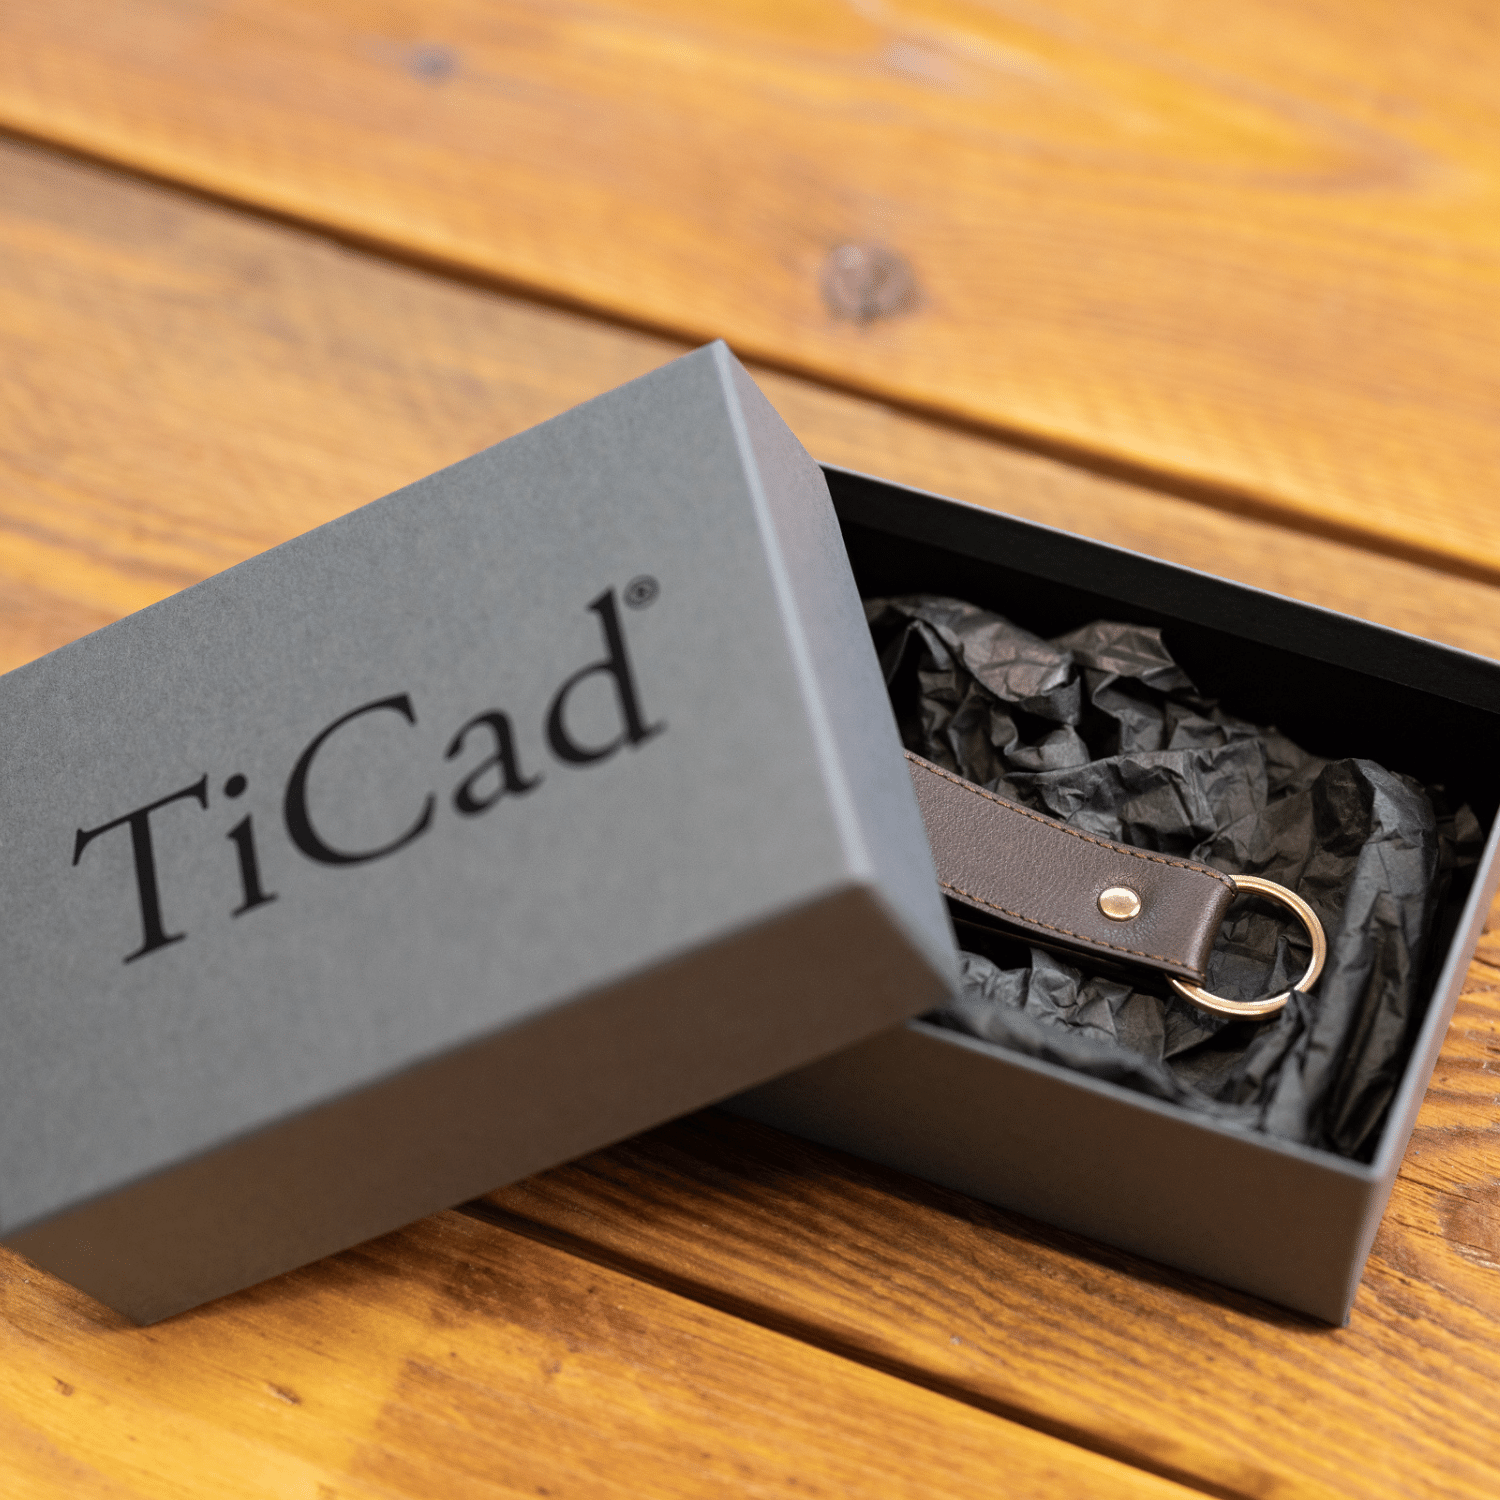 TiCad Schlüsselanhänger Classic aus Leder in Verpackungsbox